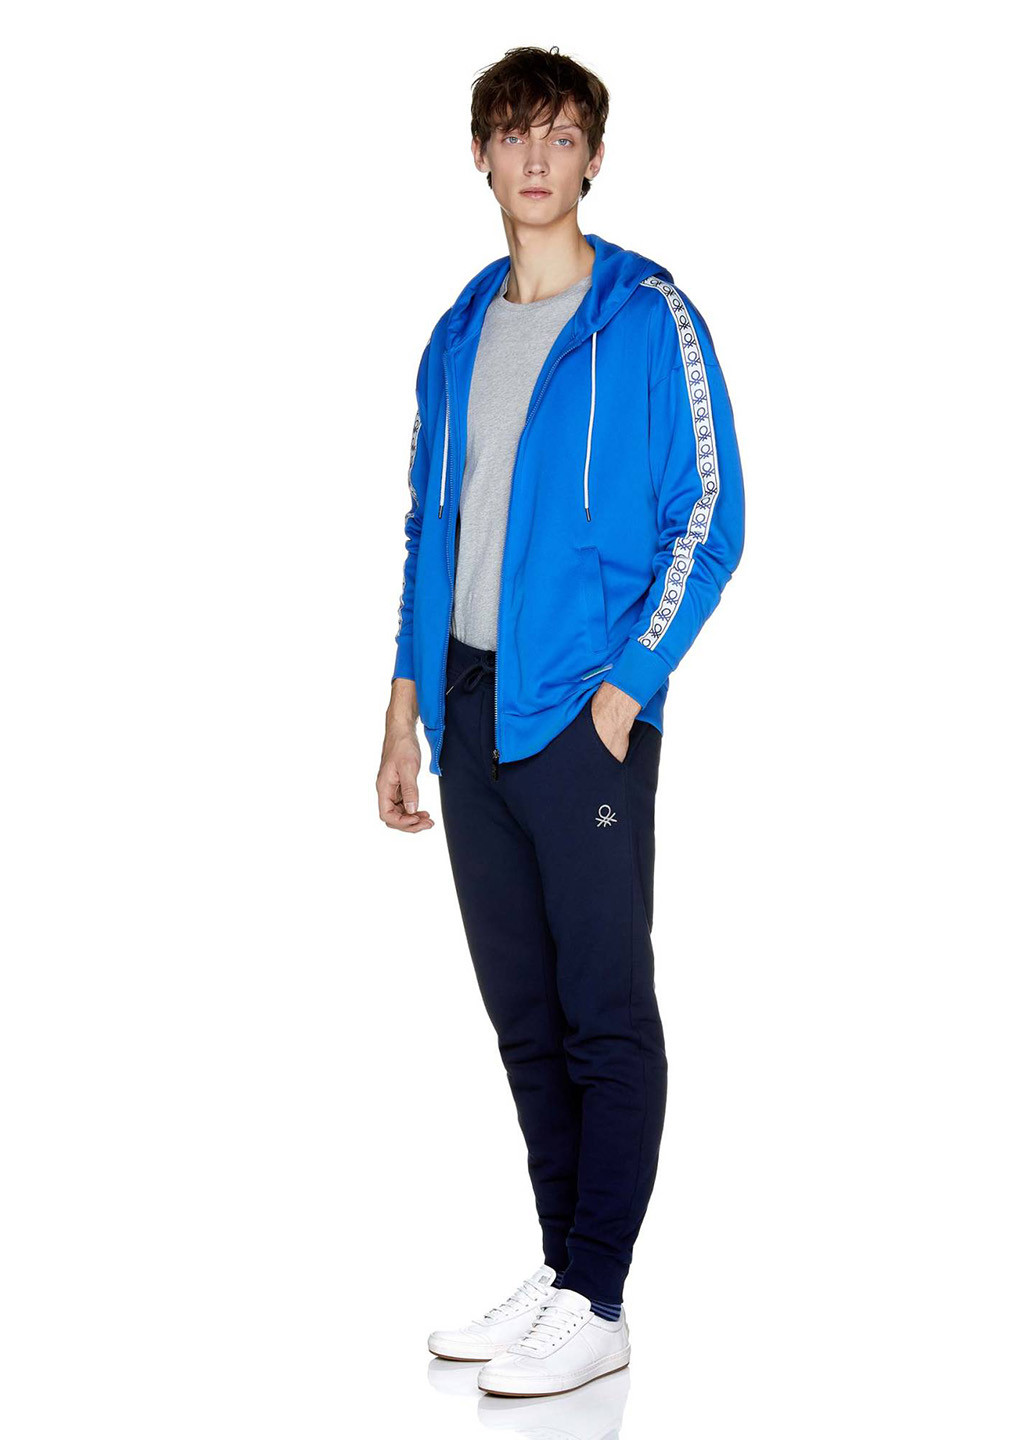 Темно-синие спортивные демисезонные со средней талией брюки United Colors of Benetton